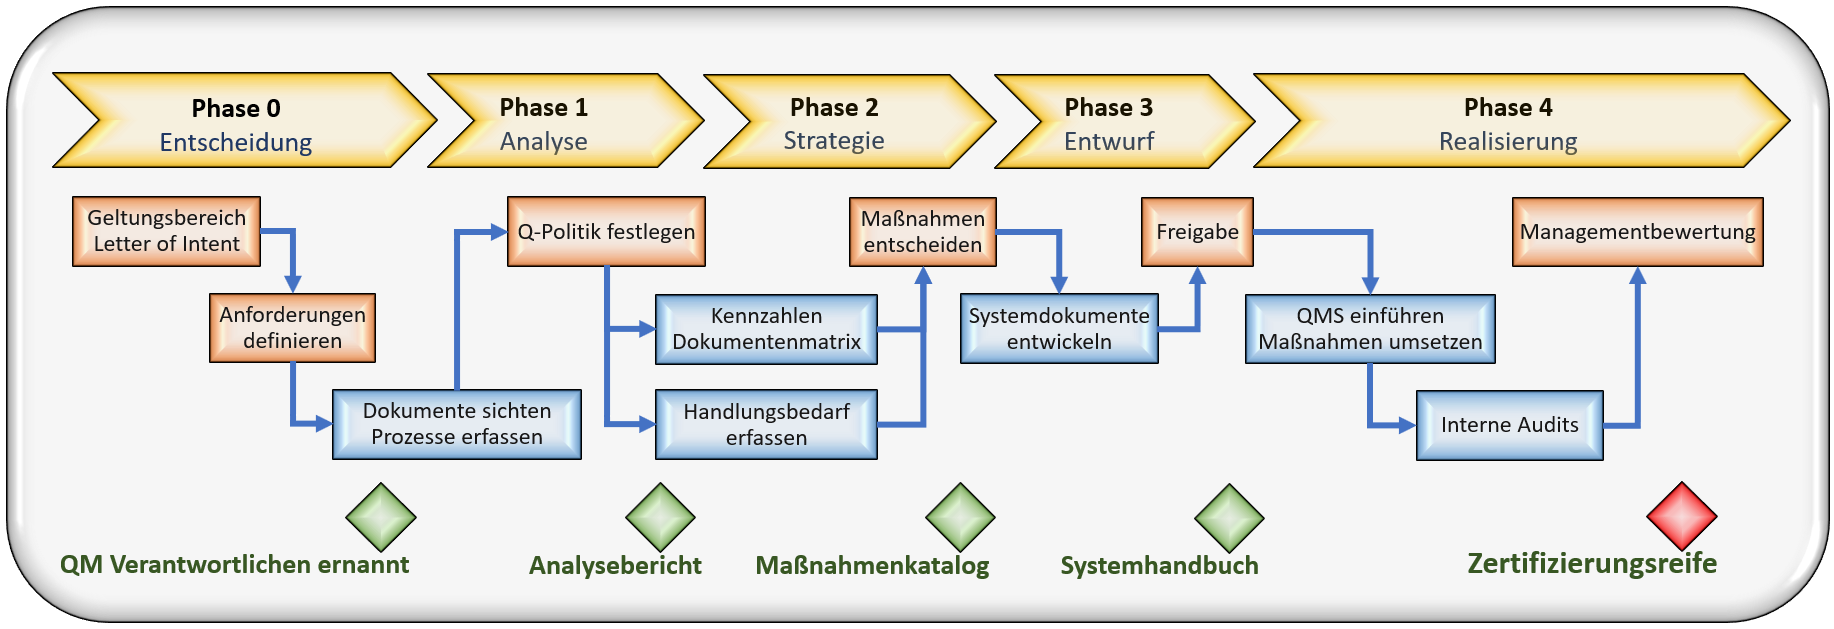 Prozessdiagramm: Implementierung eines Qualitäts-Managementsystems